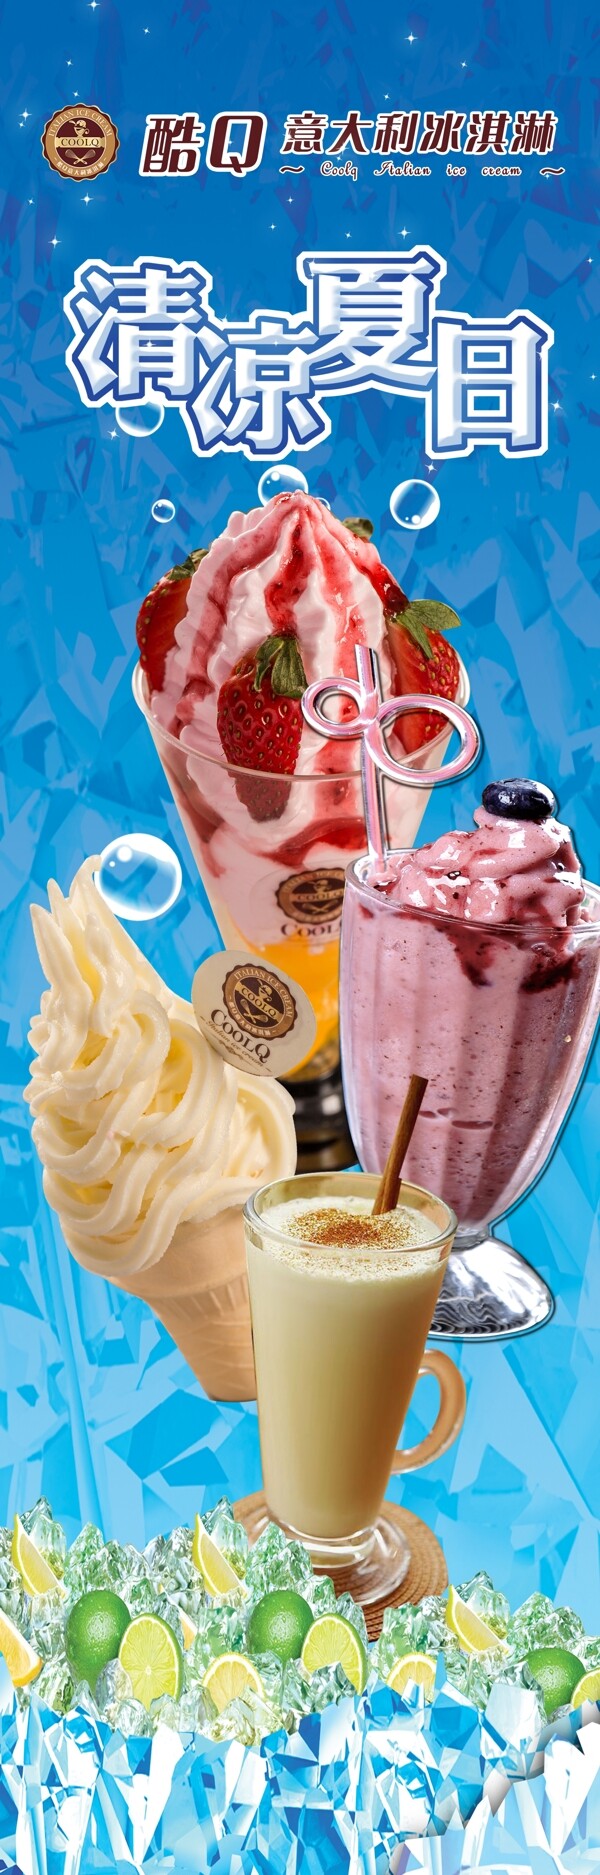 酷Q意大利冰淇淋设计背景高清